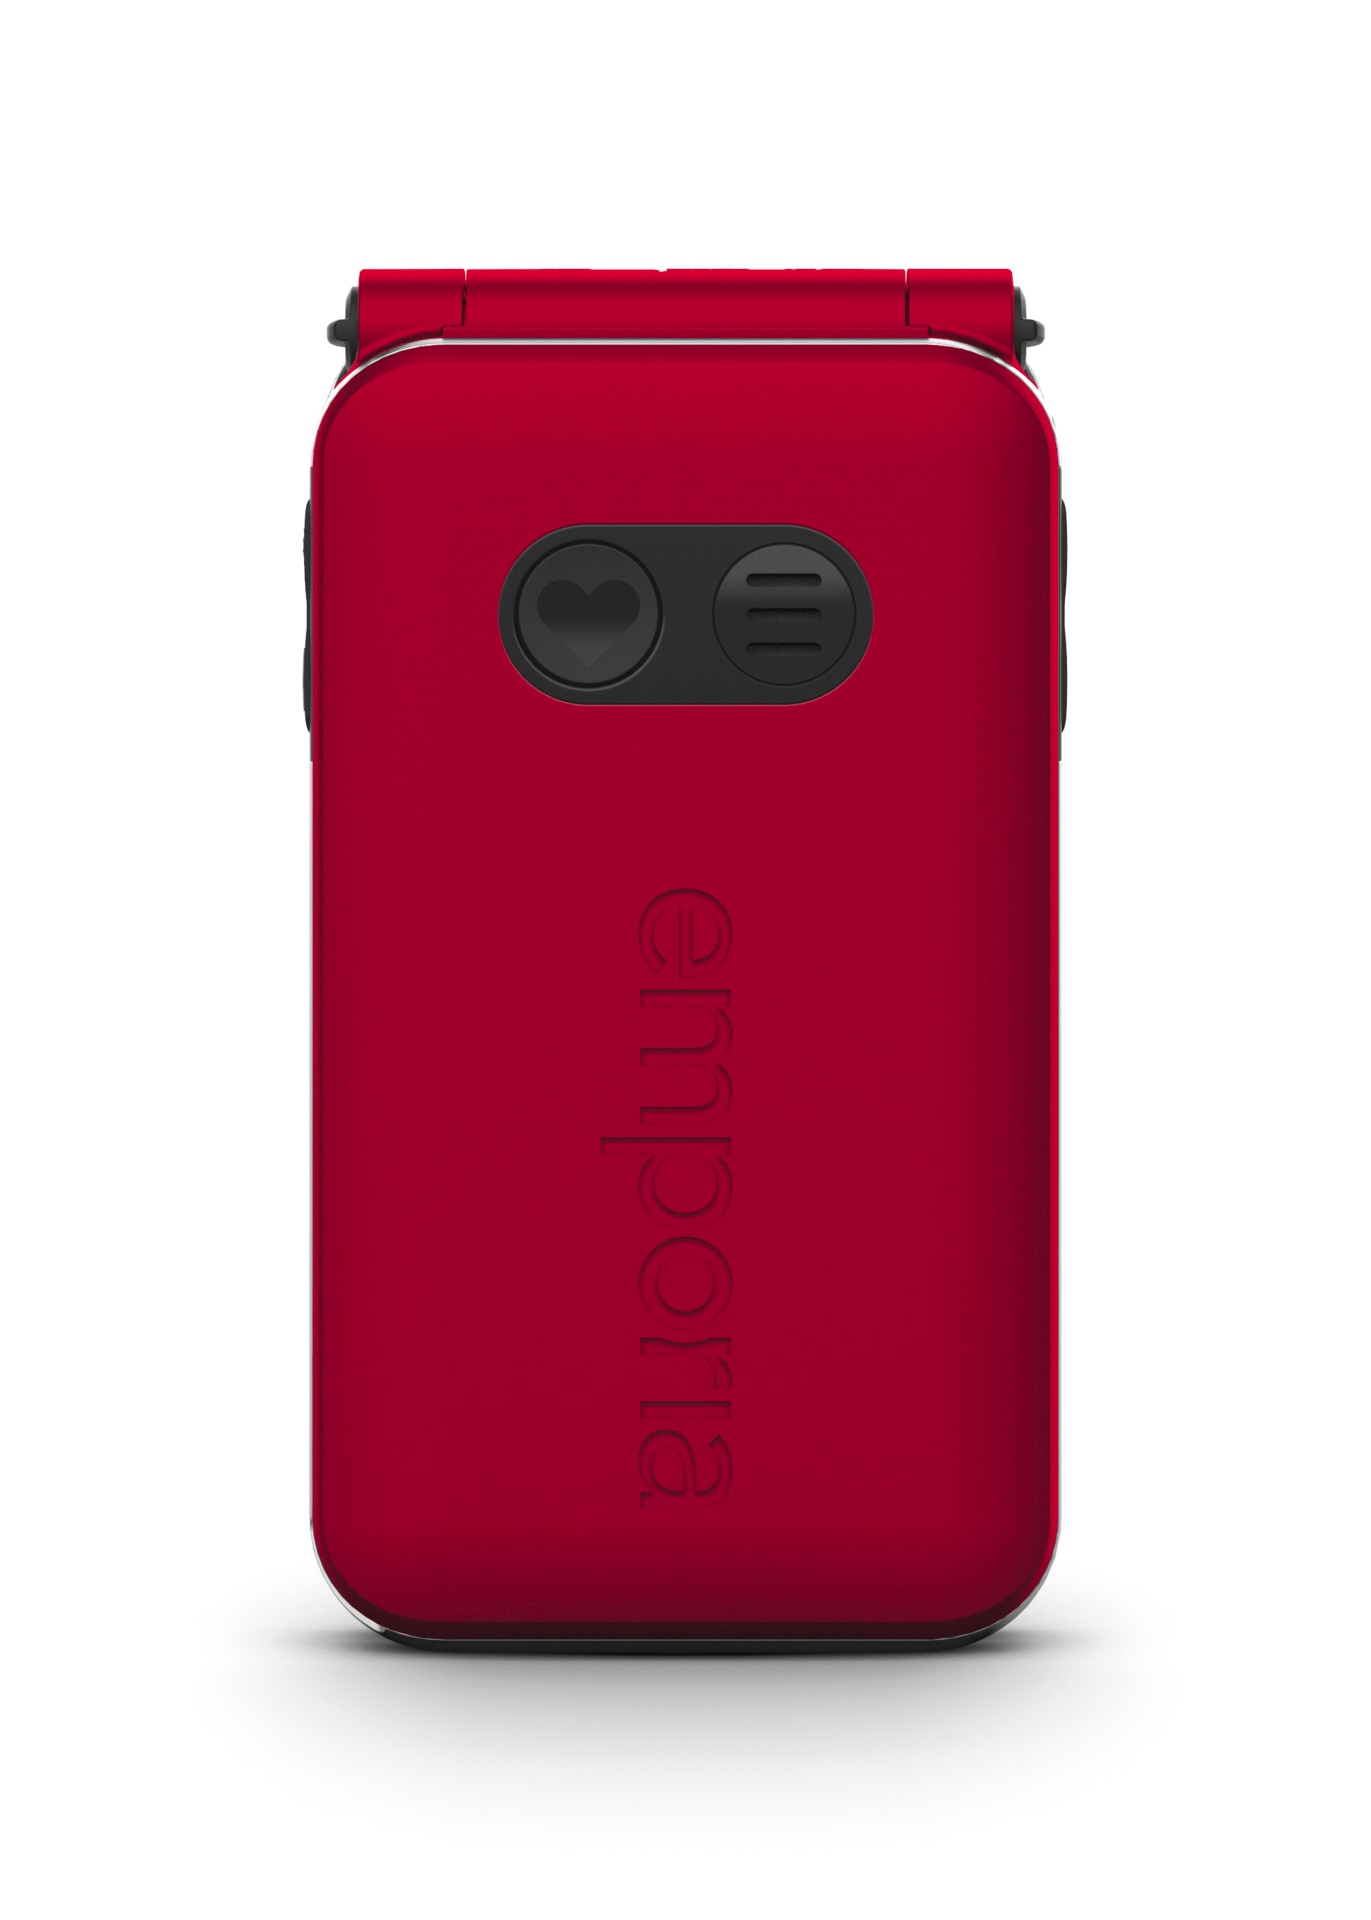 Emporia Smartphone »JOY V228-2G«, Rot, 7,1 cm/2,8 Zoll, 0,128 GB Speicherplatz